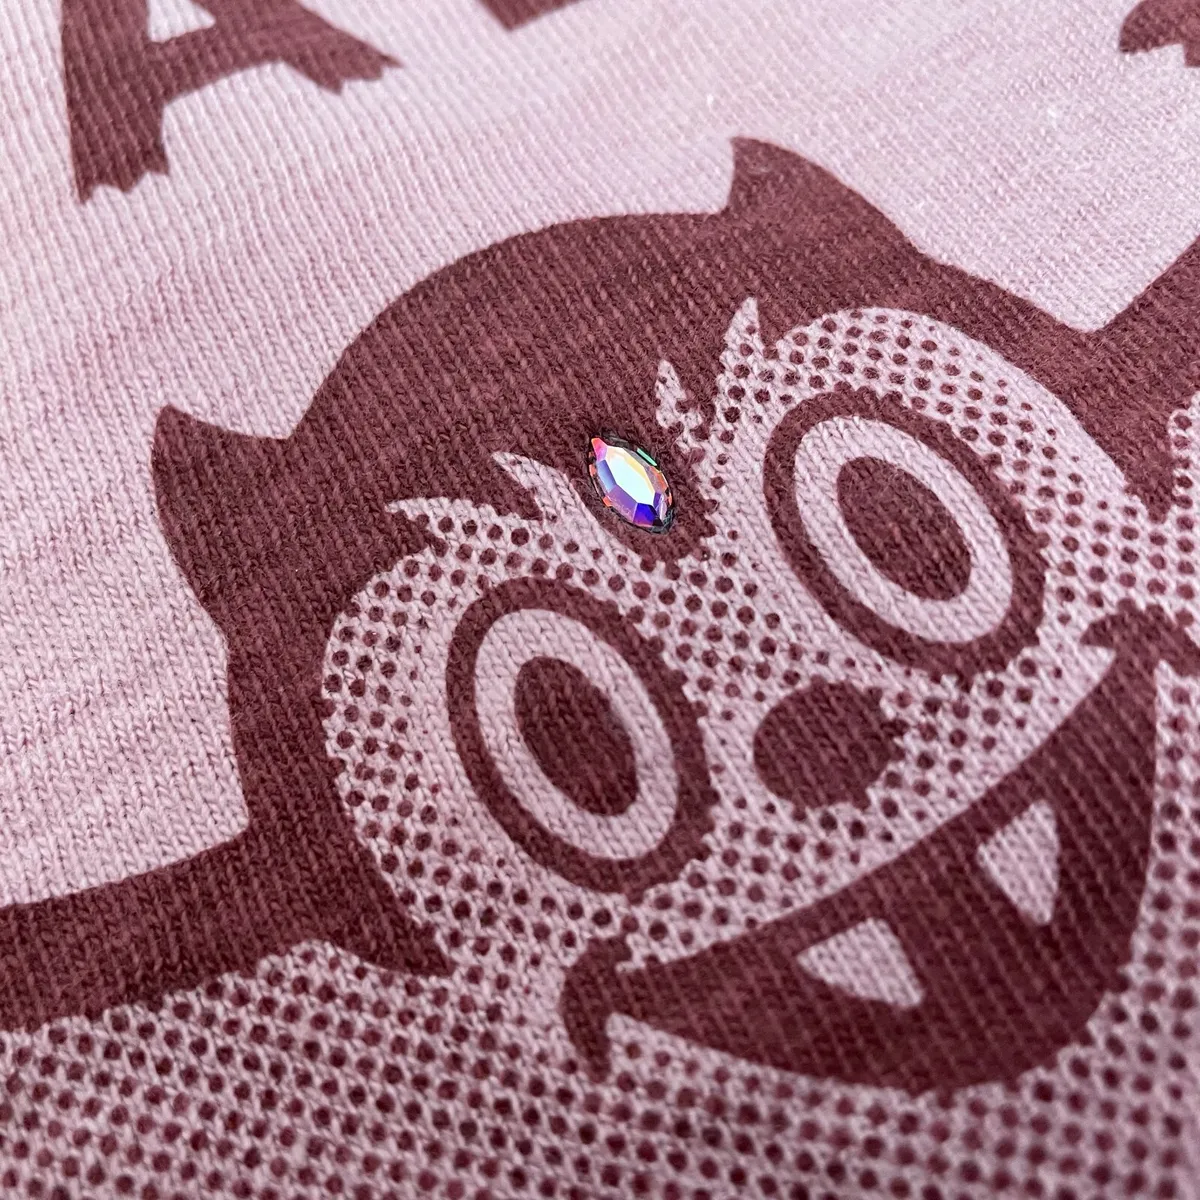 Human Made x Lil Uzi Vert T-Shirt Pink Diamond Size S Small 🔥 SHIPS TODAY!